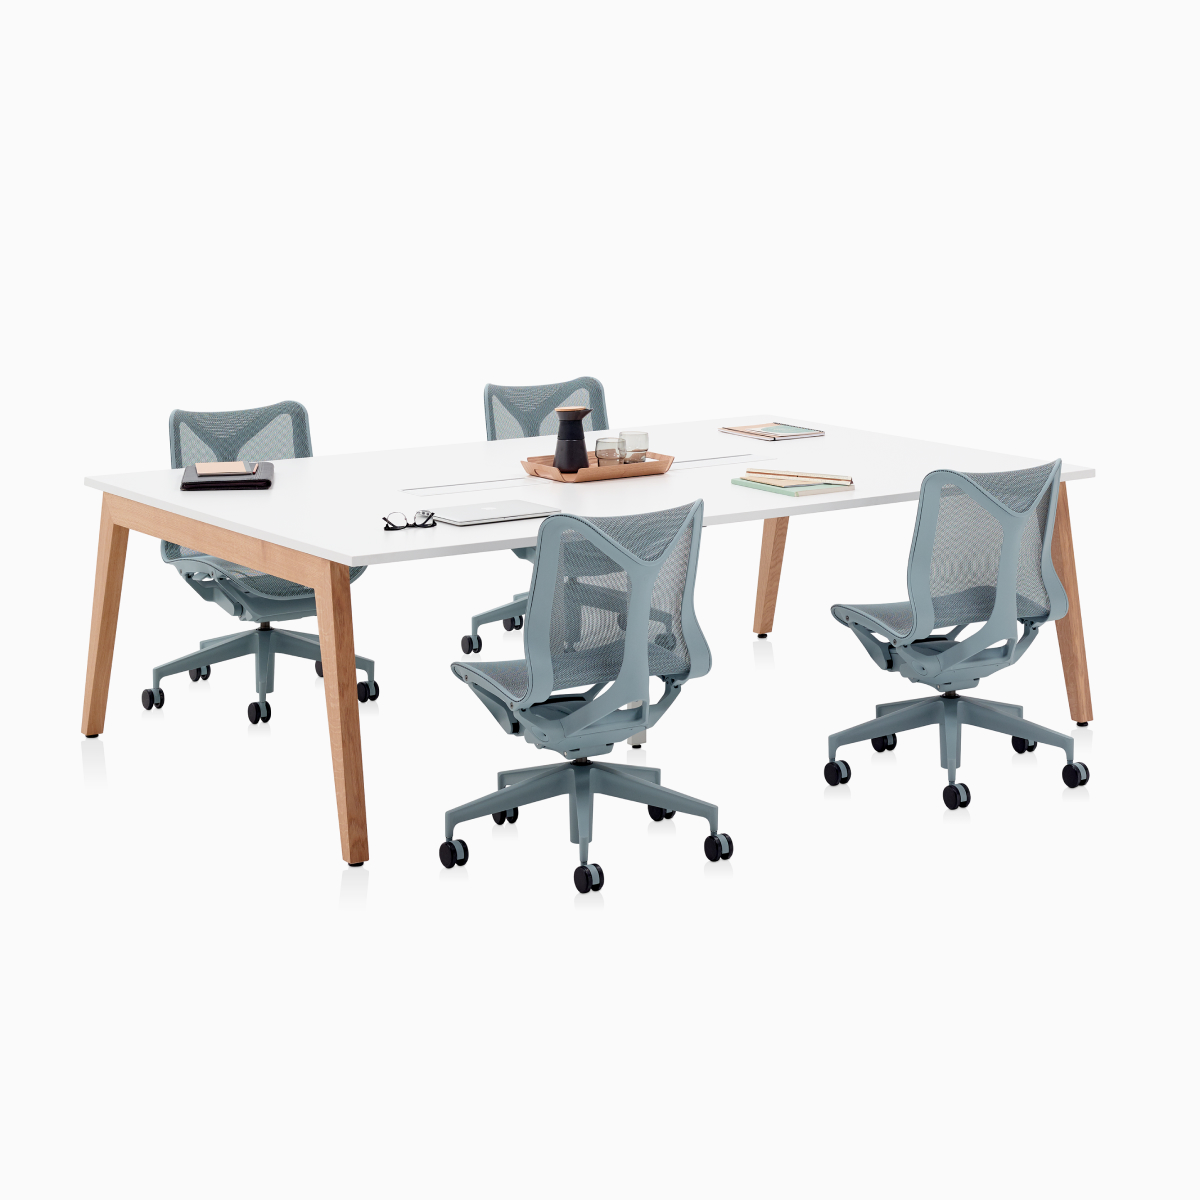 Table de réunion Layout Studio avec alimentation et pieds en bois ainsi que quatre sièges Cosm gris à dossier bas.